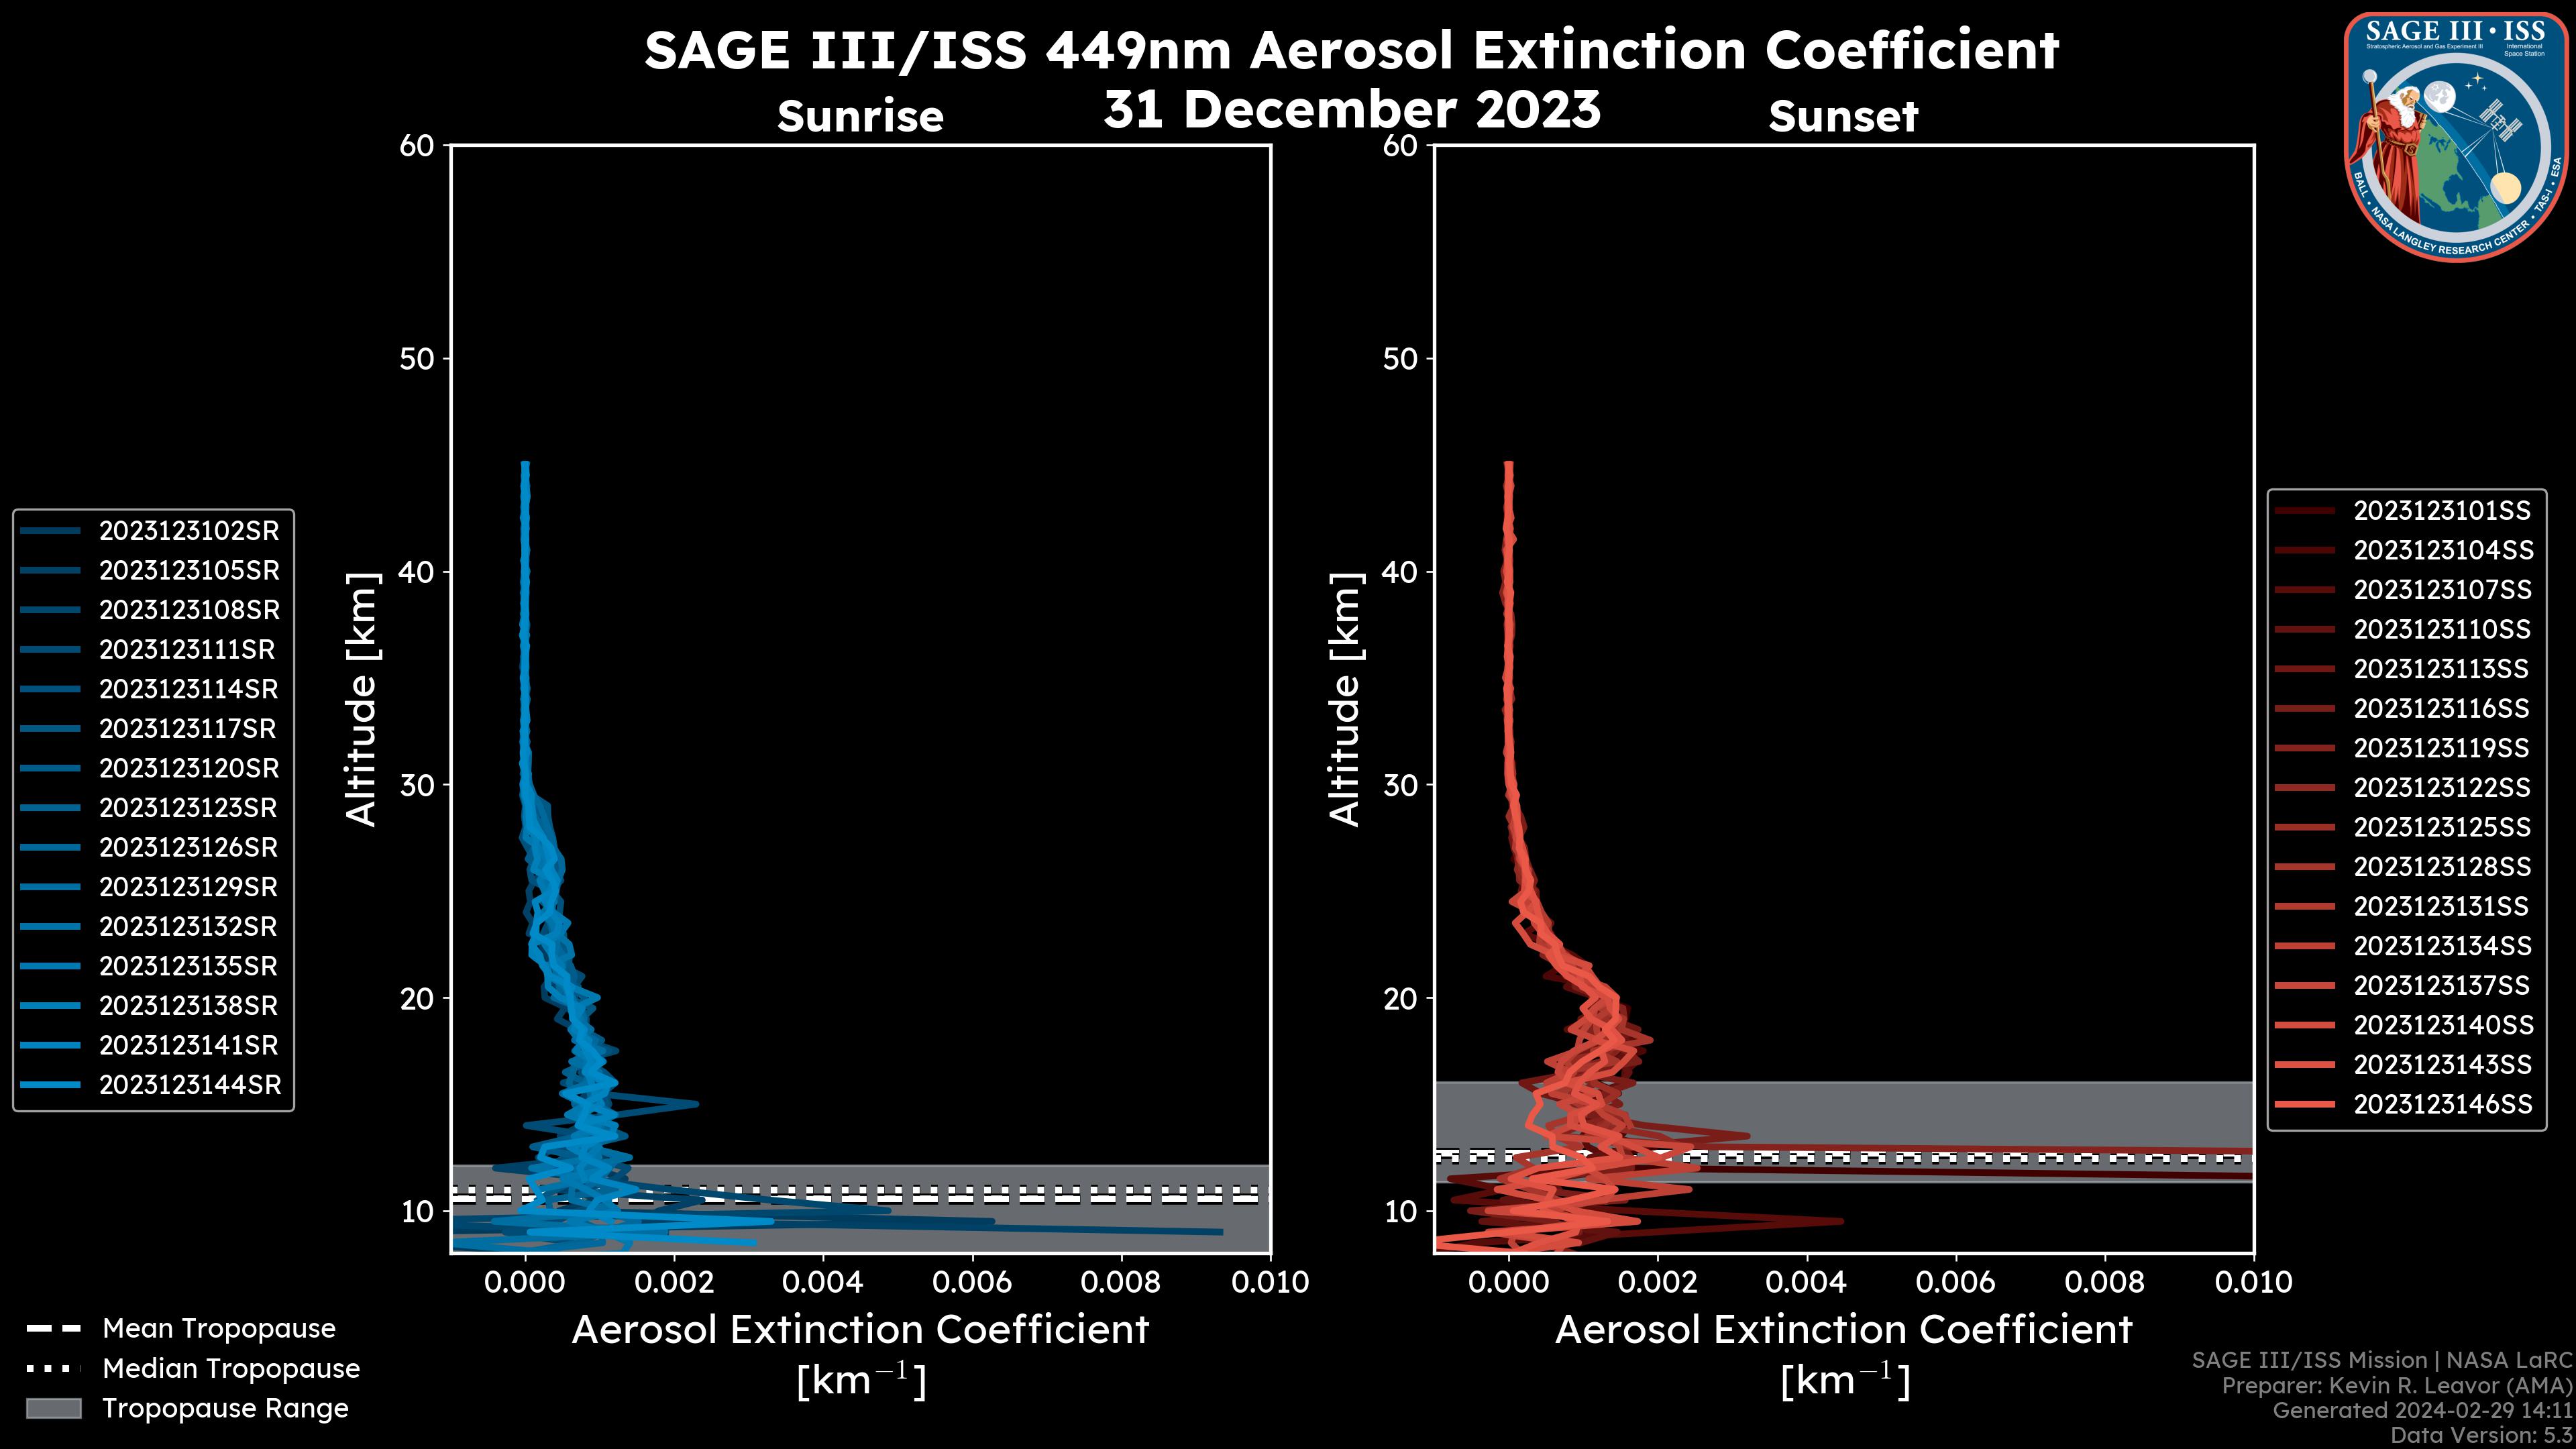 449nm Aerosol Extinction Coefficient